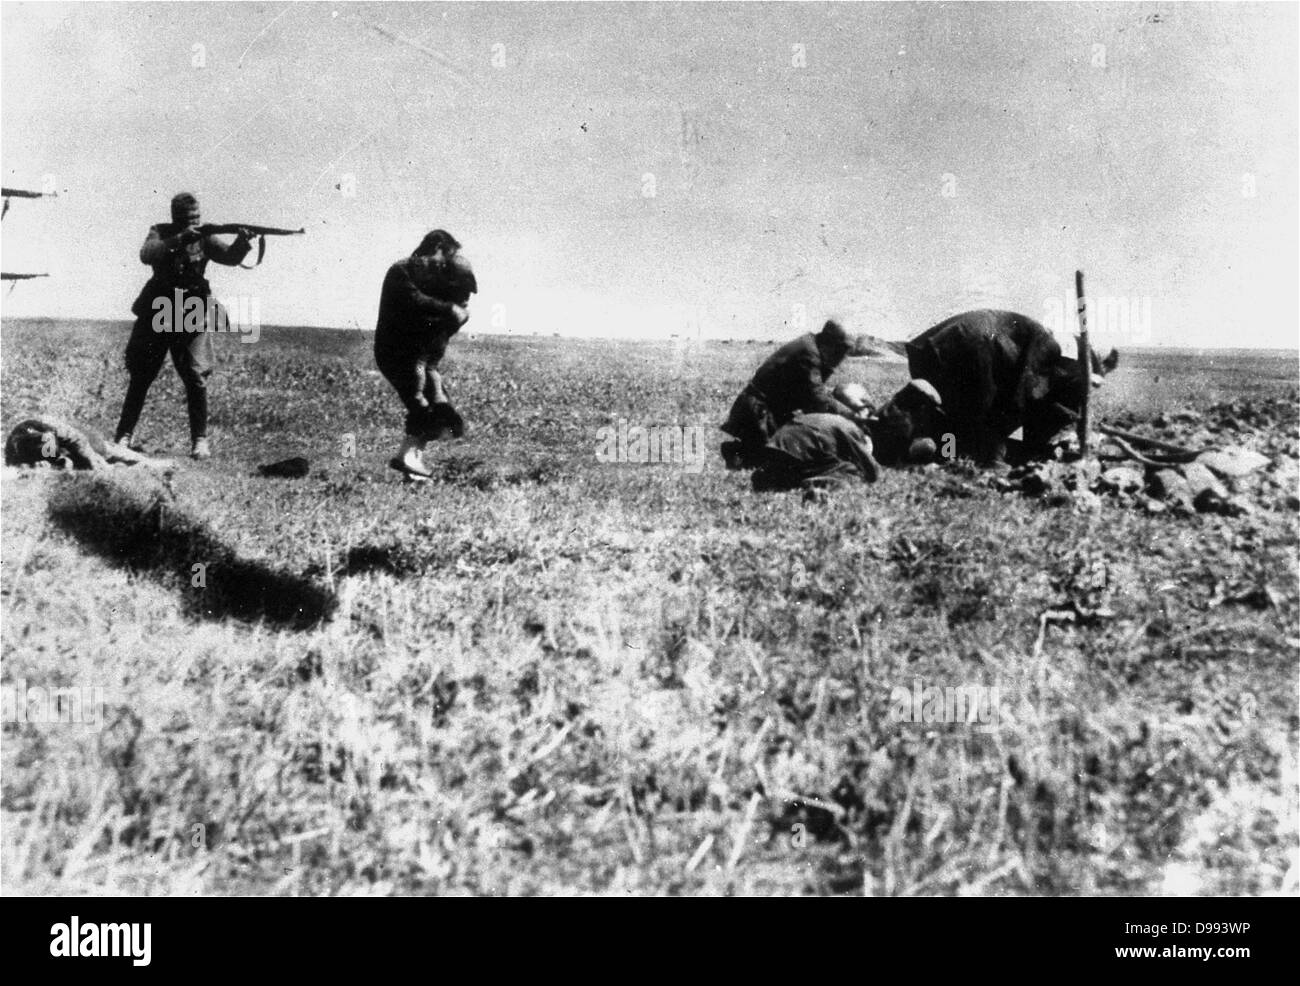 Ejecución de los judíos de Kiev por el ejército alemán los equipos móviles de matanza (Einsatzgruppen) cerca de Ivangorod Ucrania 1942. El holocausto de la II Guerra Mundial. La foto fue interceptado en una oficina de correos de Varsovia por un miembro de la resistencia polaca llamado Jerzy Tomaszewski. Foto de stock